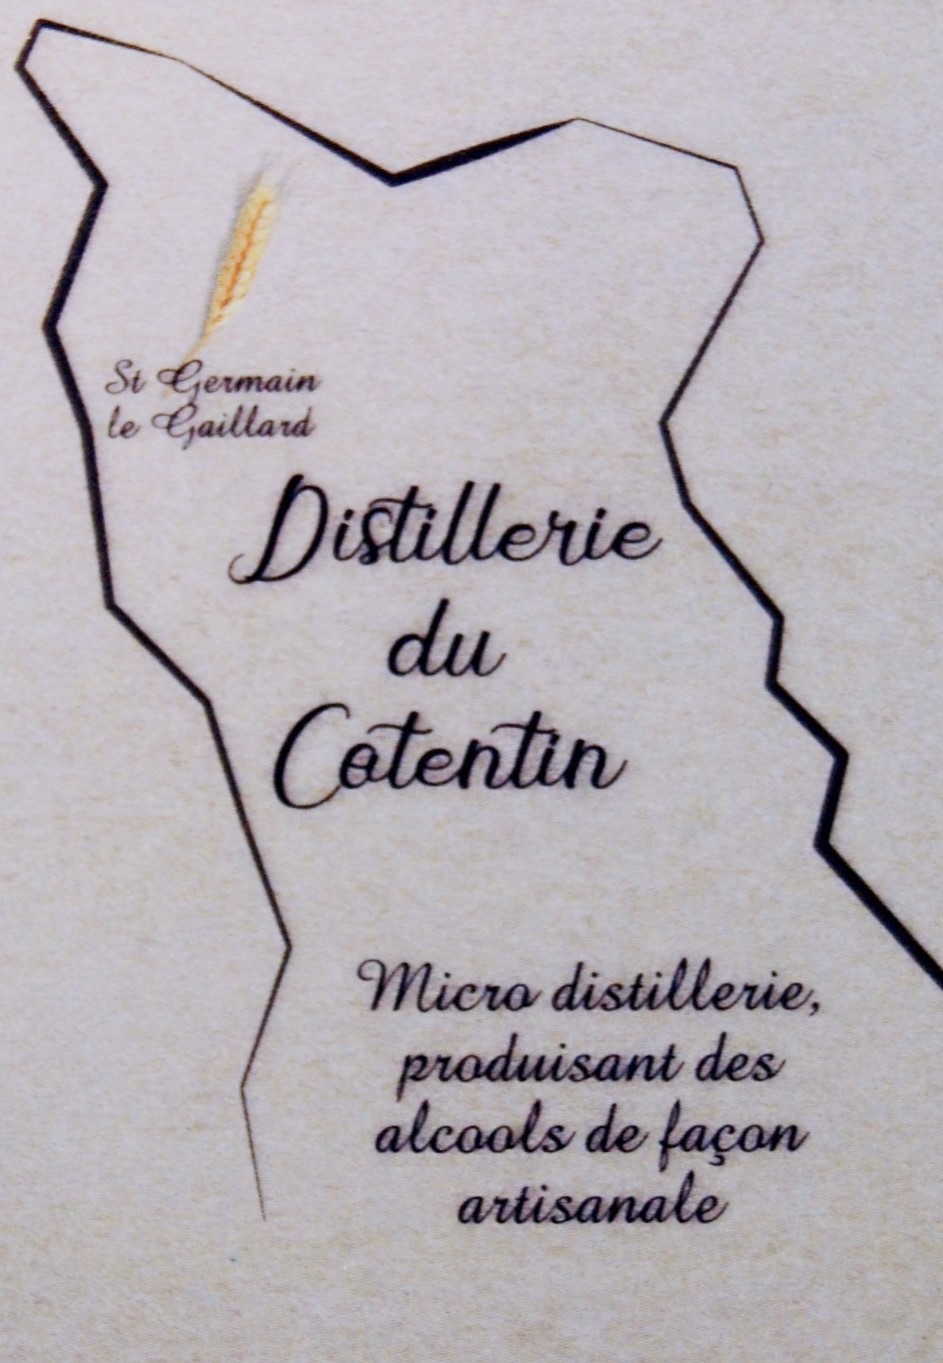 Distillerie du Cotentin